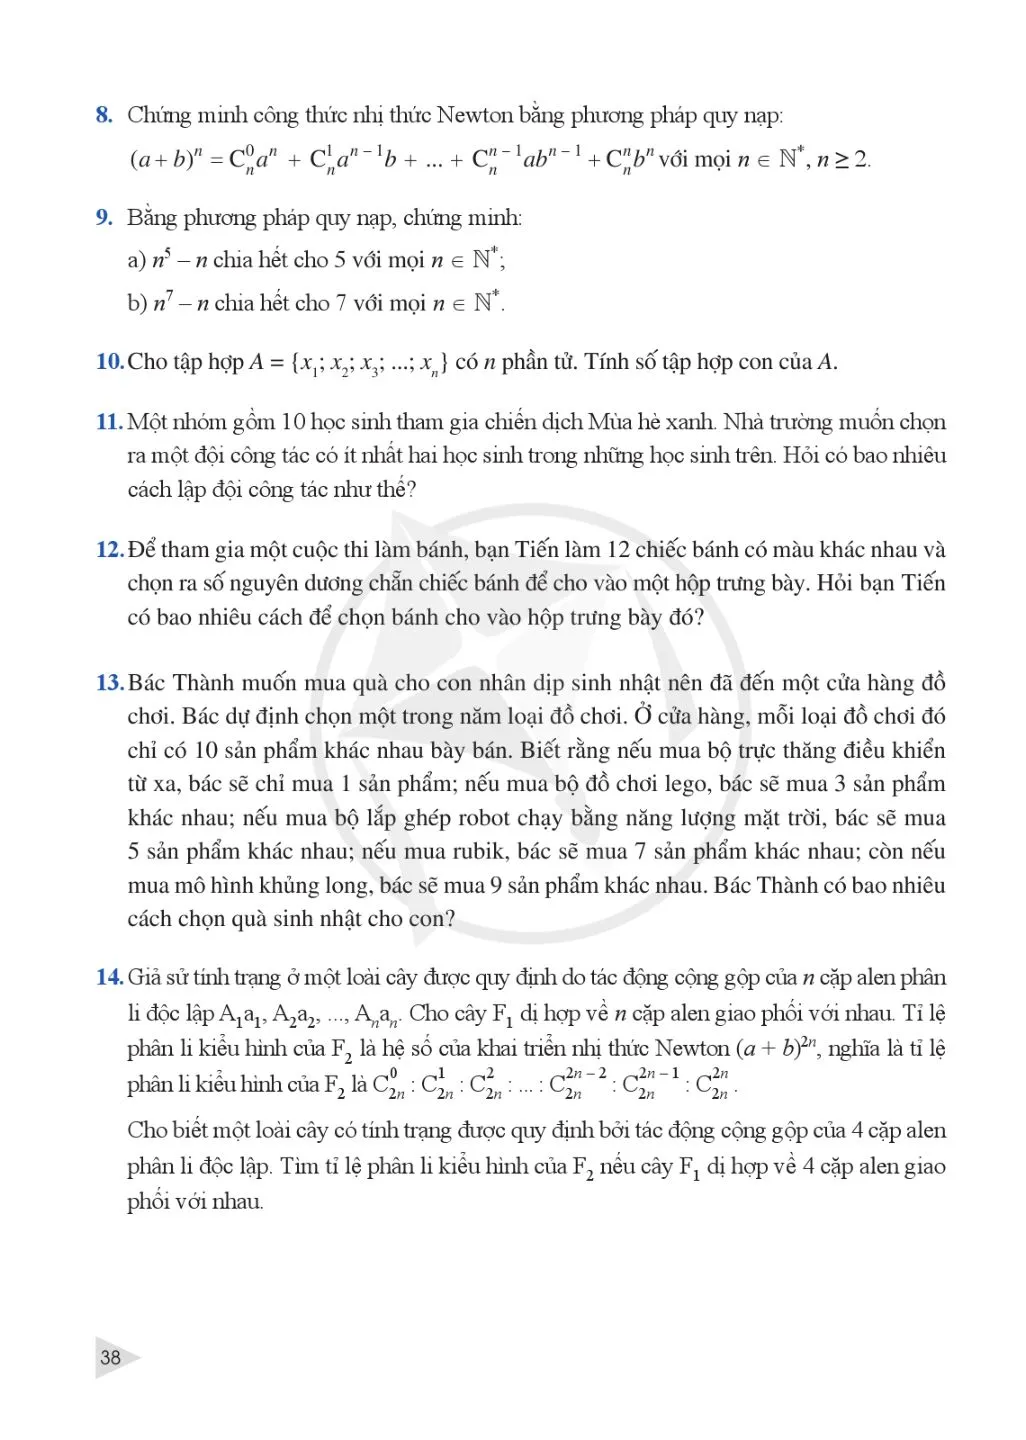 Bài 2. Nhị thức Newton